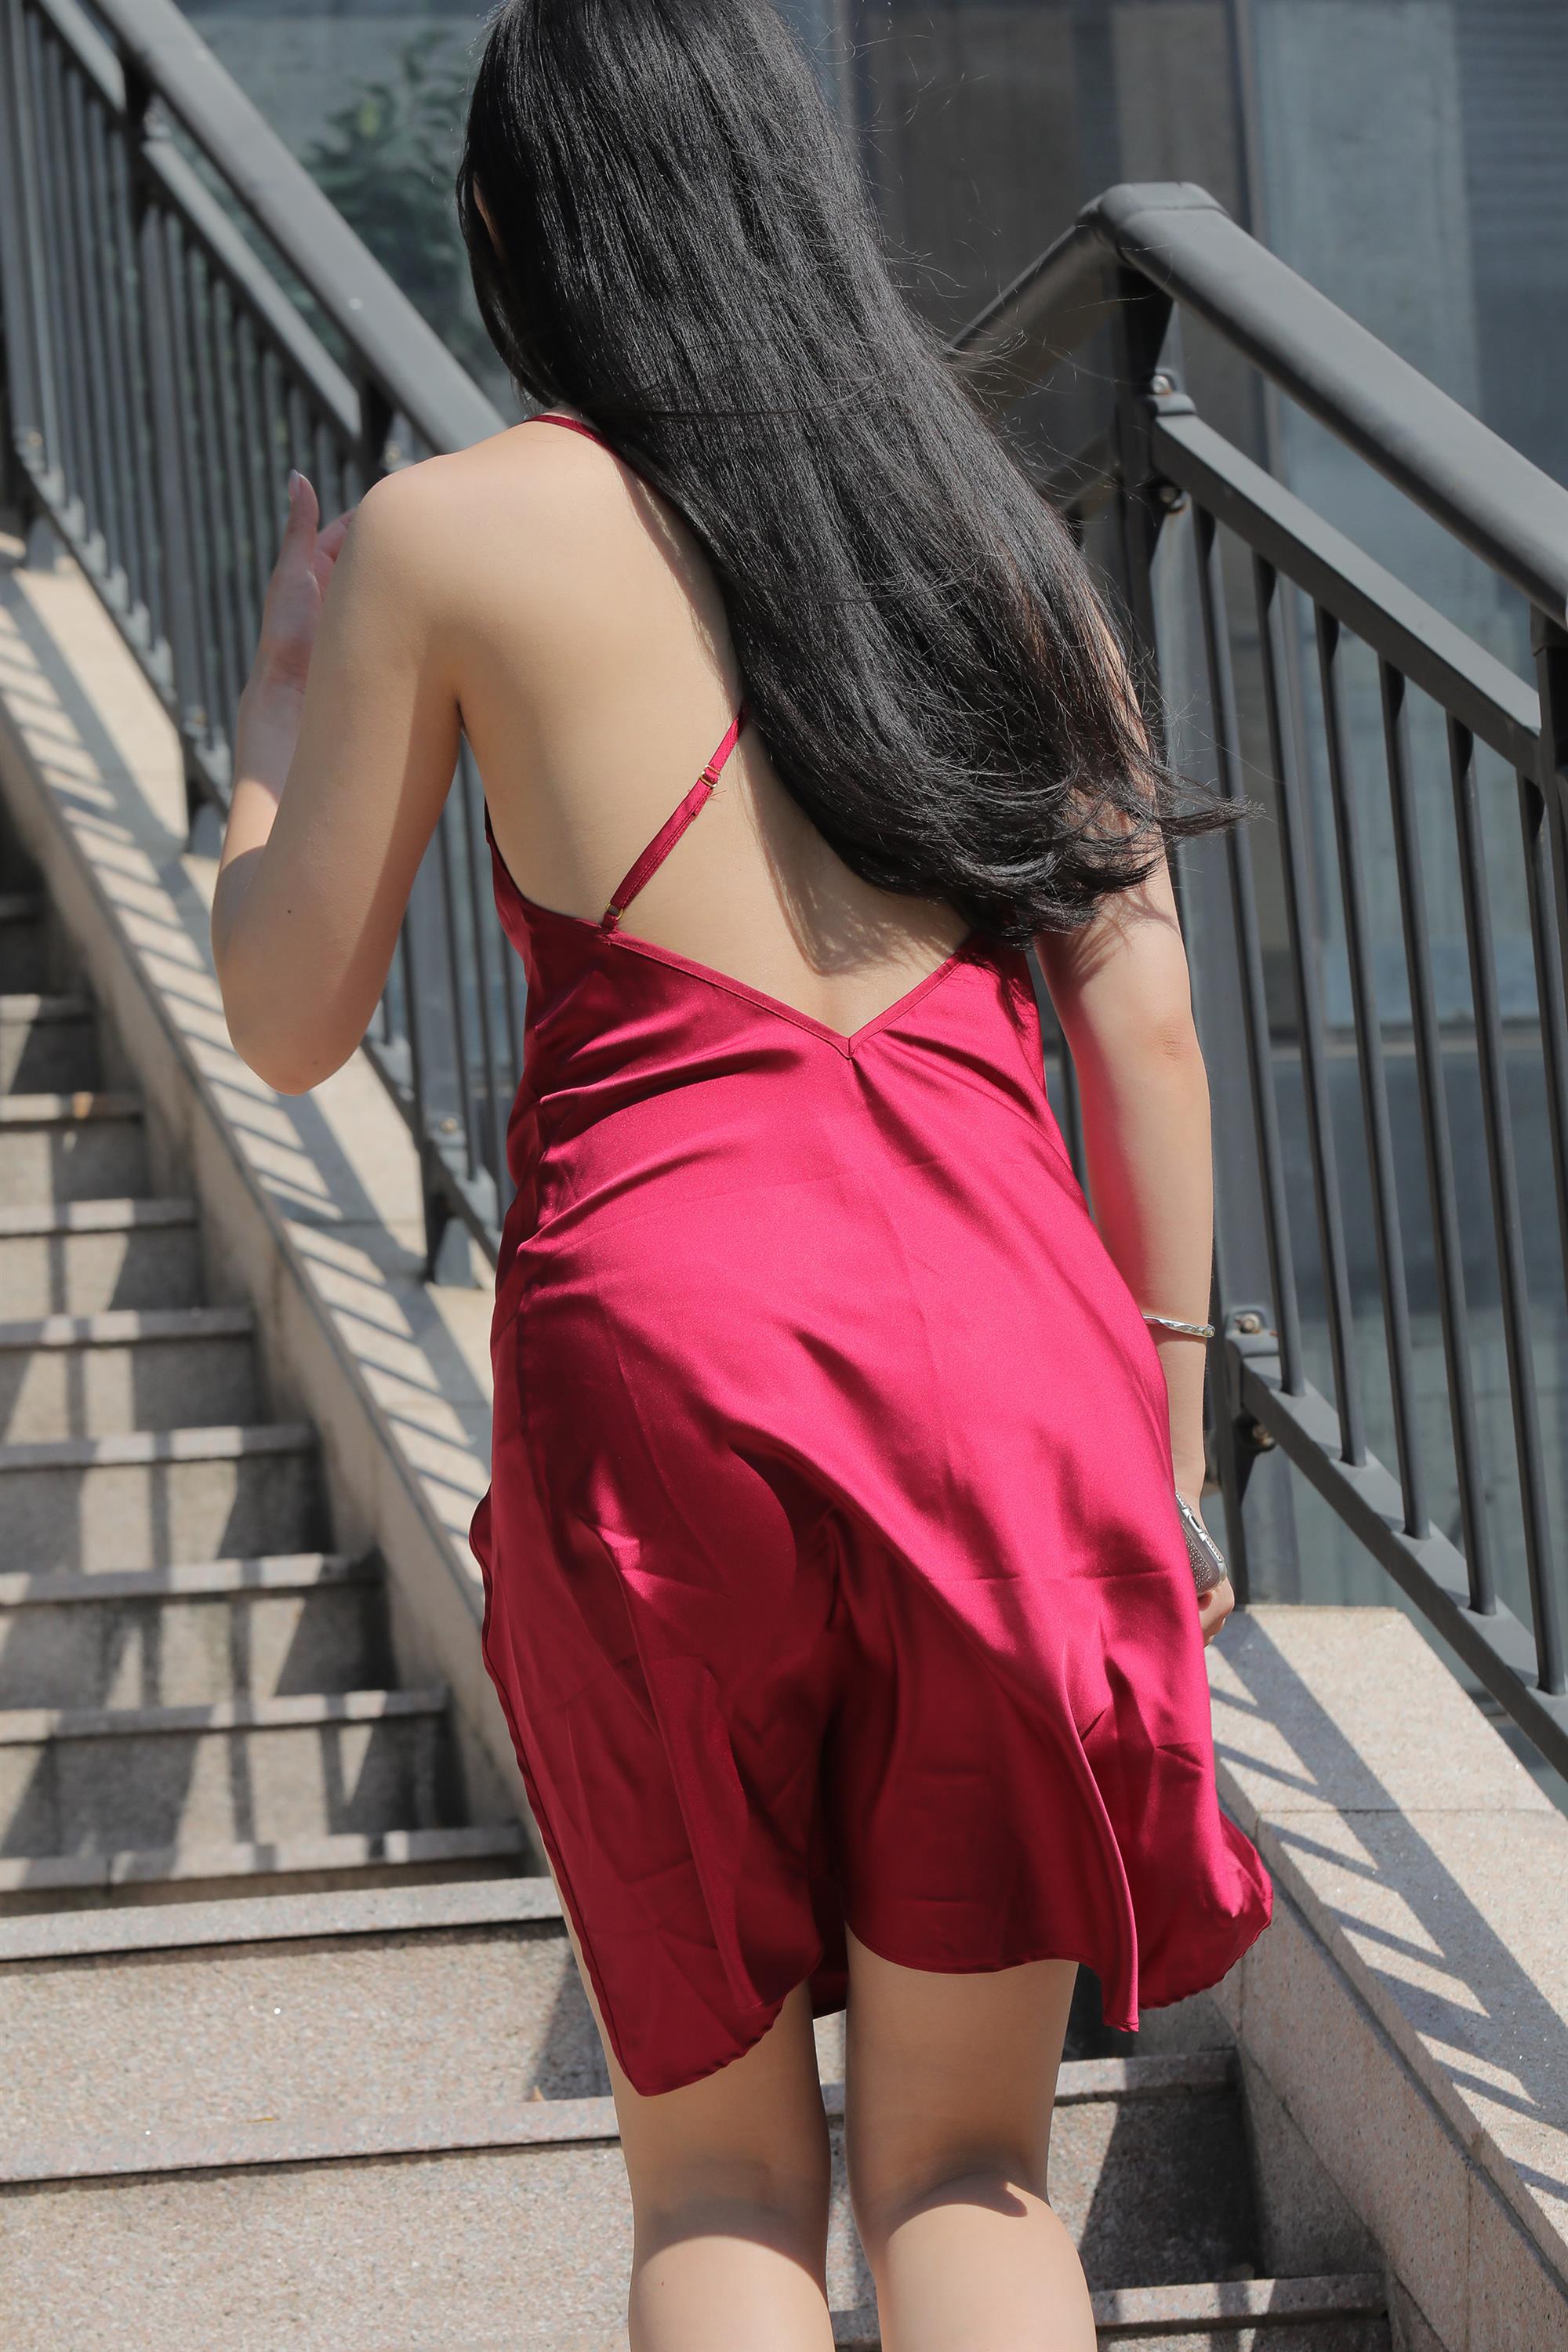 Street beauty in a red dress - 6.jpg